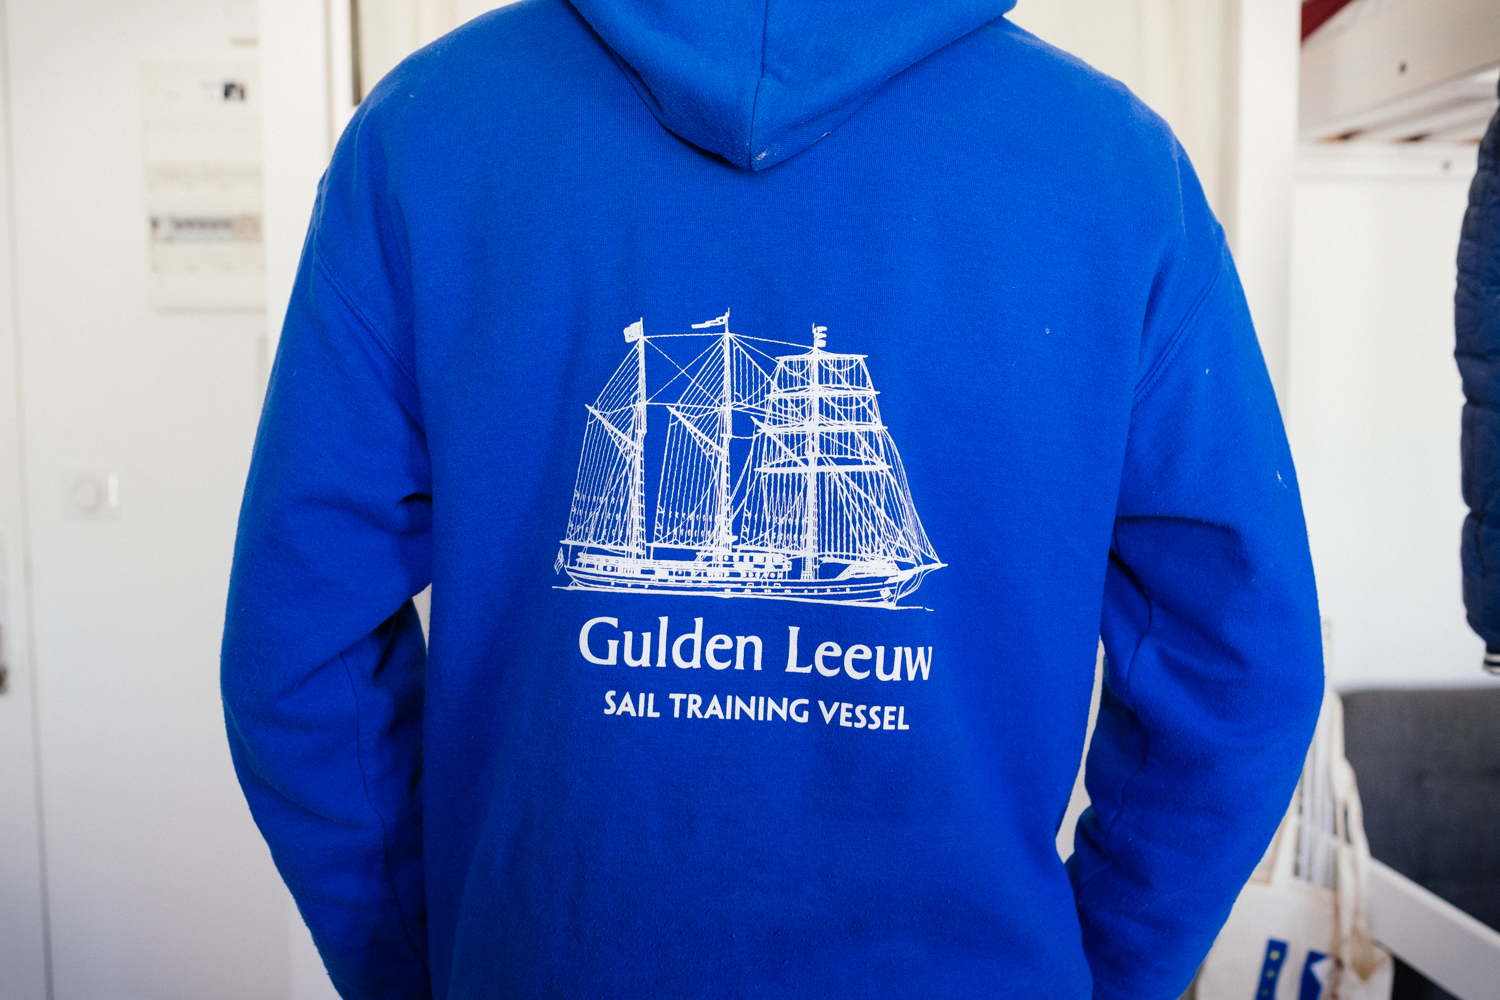 Thomas LESAGE montre le sweat du Gulden Leeuw, qui veut dire Lion d’or, en hollandais, le nom du bateau-école sur lequel il est parti étudier quatre mois © Globe Reporters